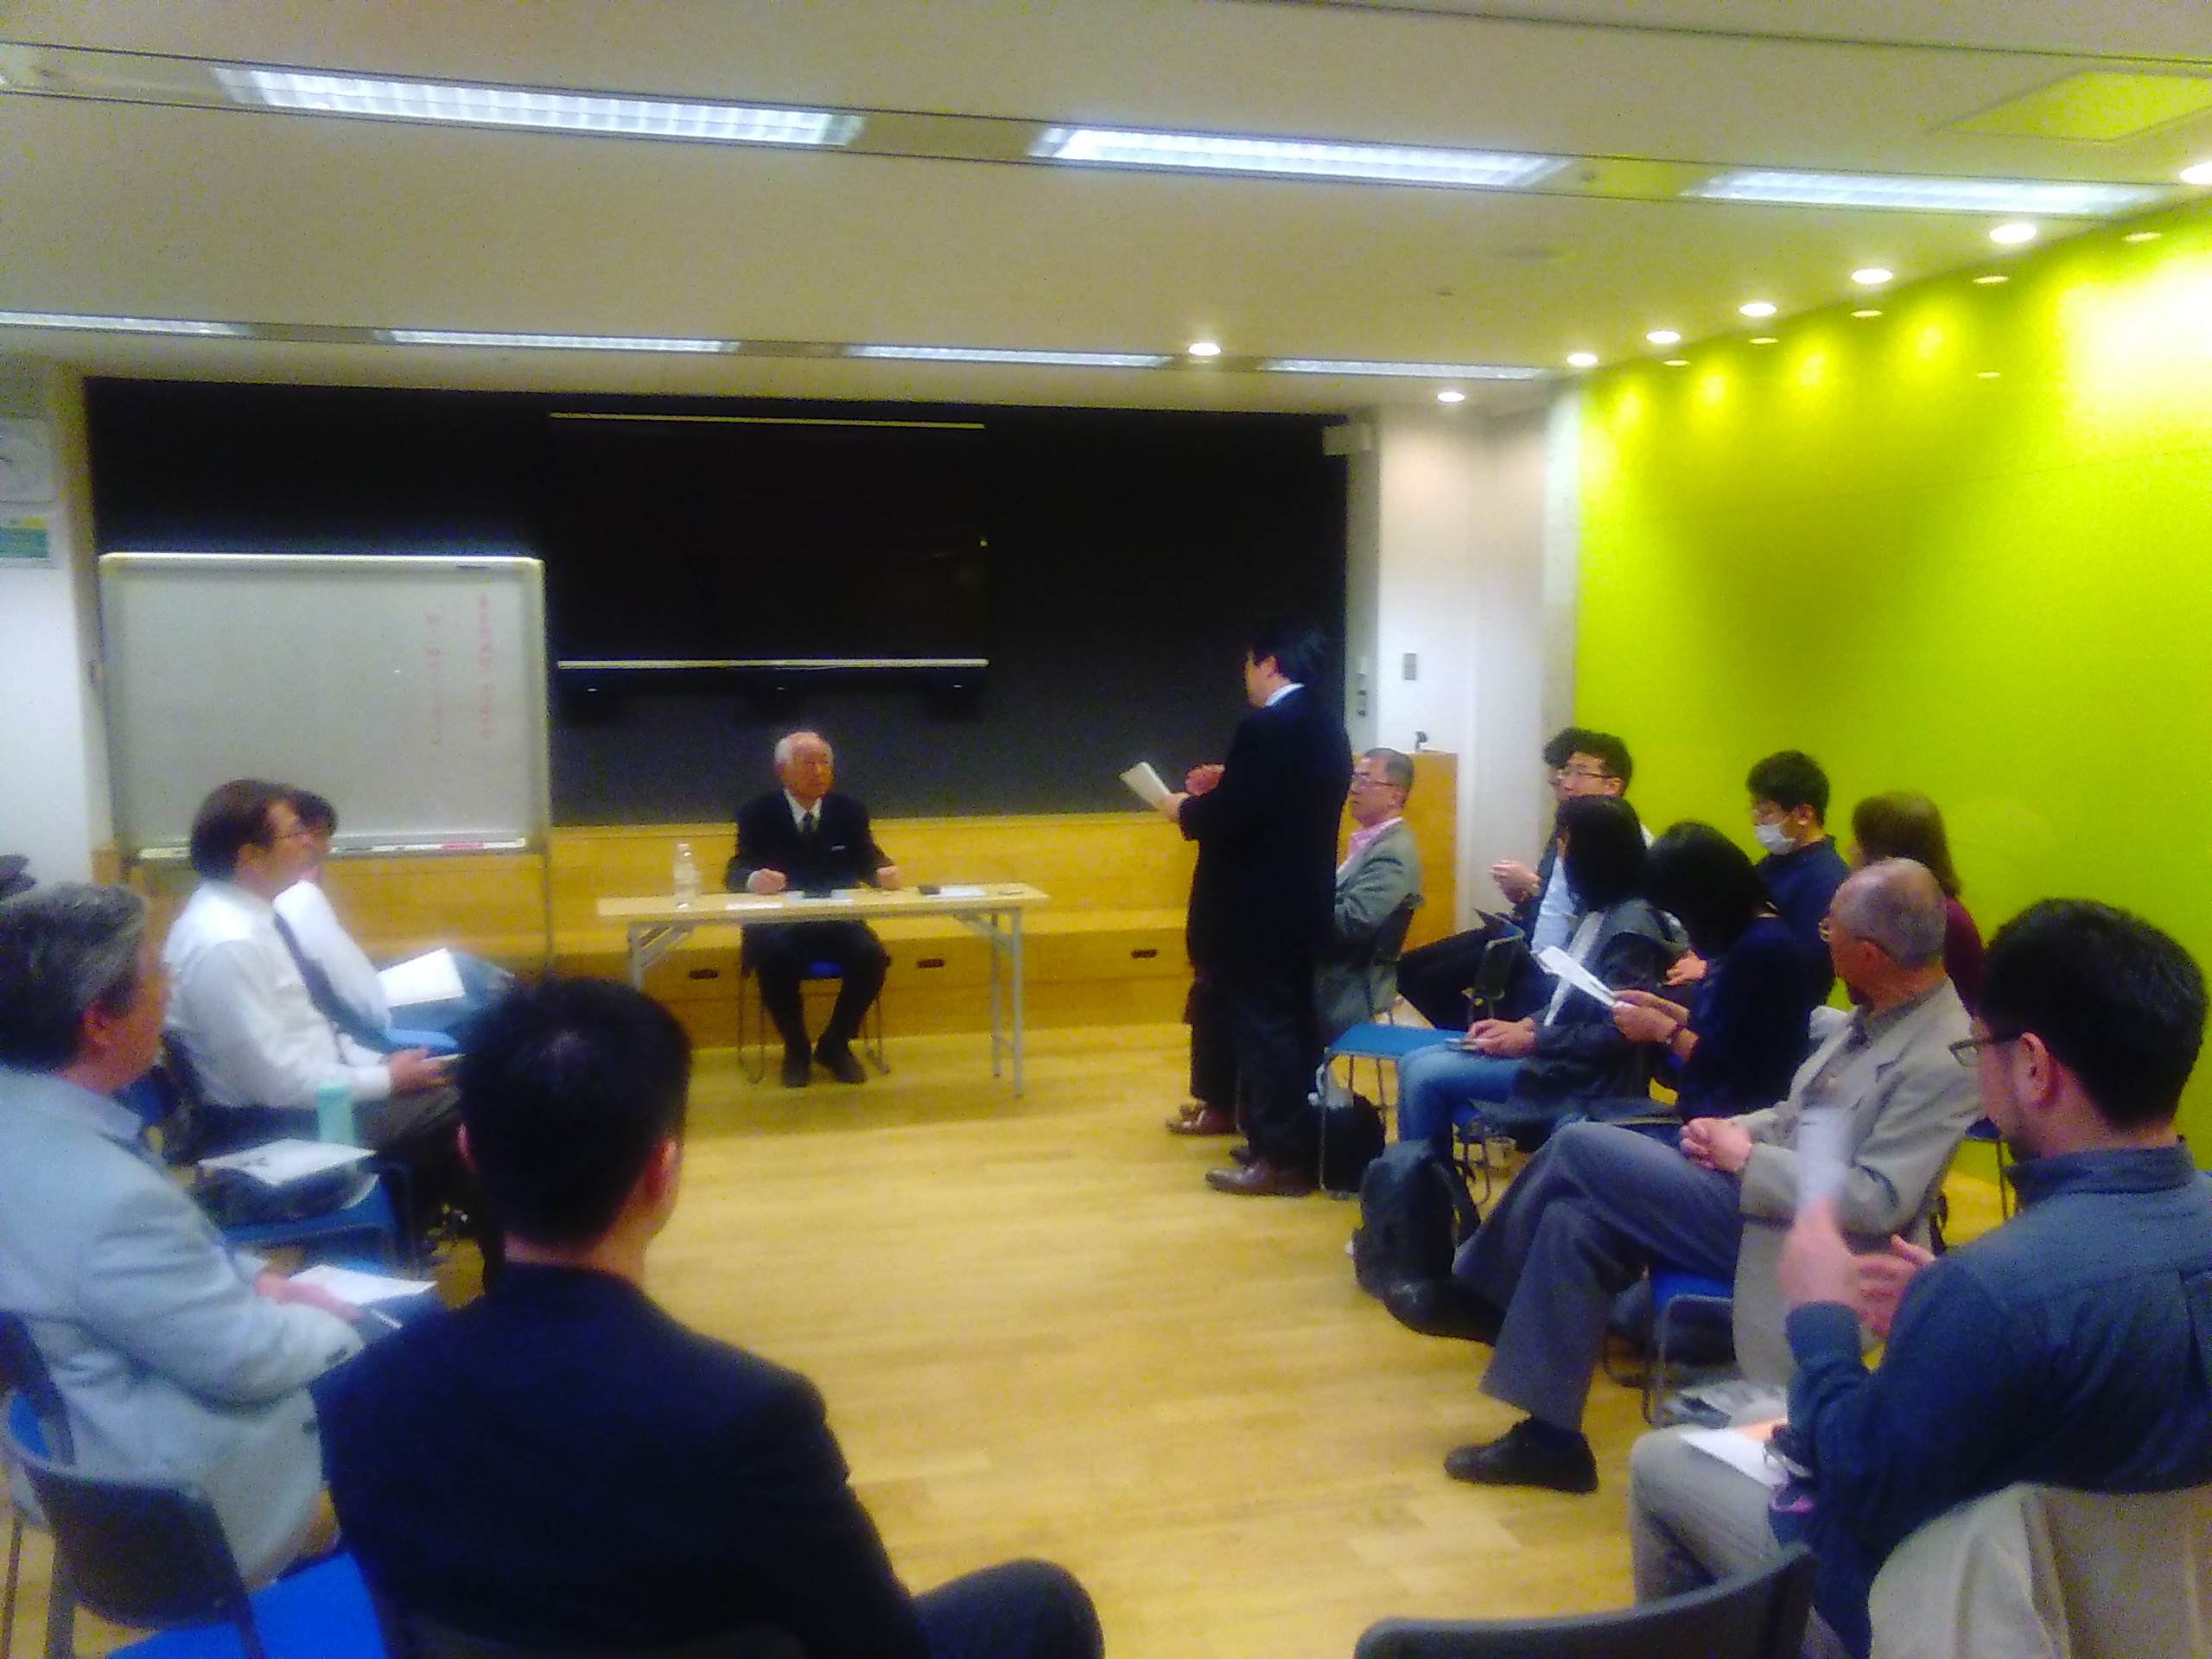 KIMG1142few - 第2回東京思風塾「新しい御代をいかに生きるか」をテーマに開催しました。